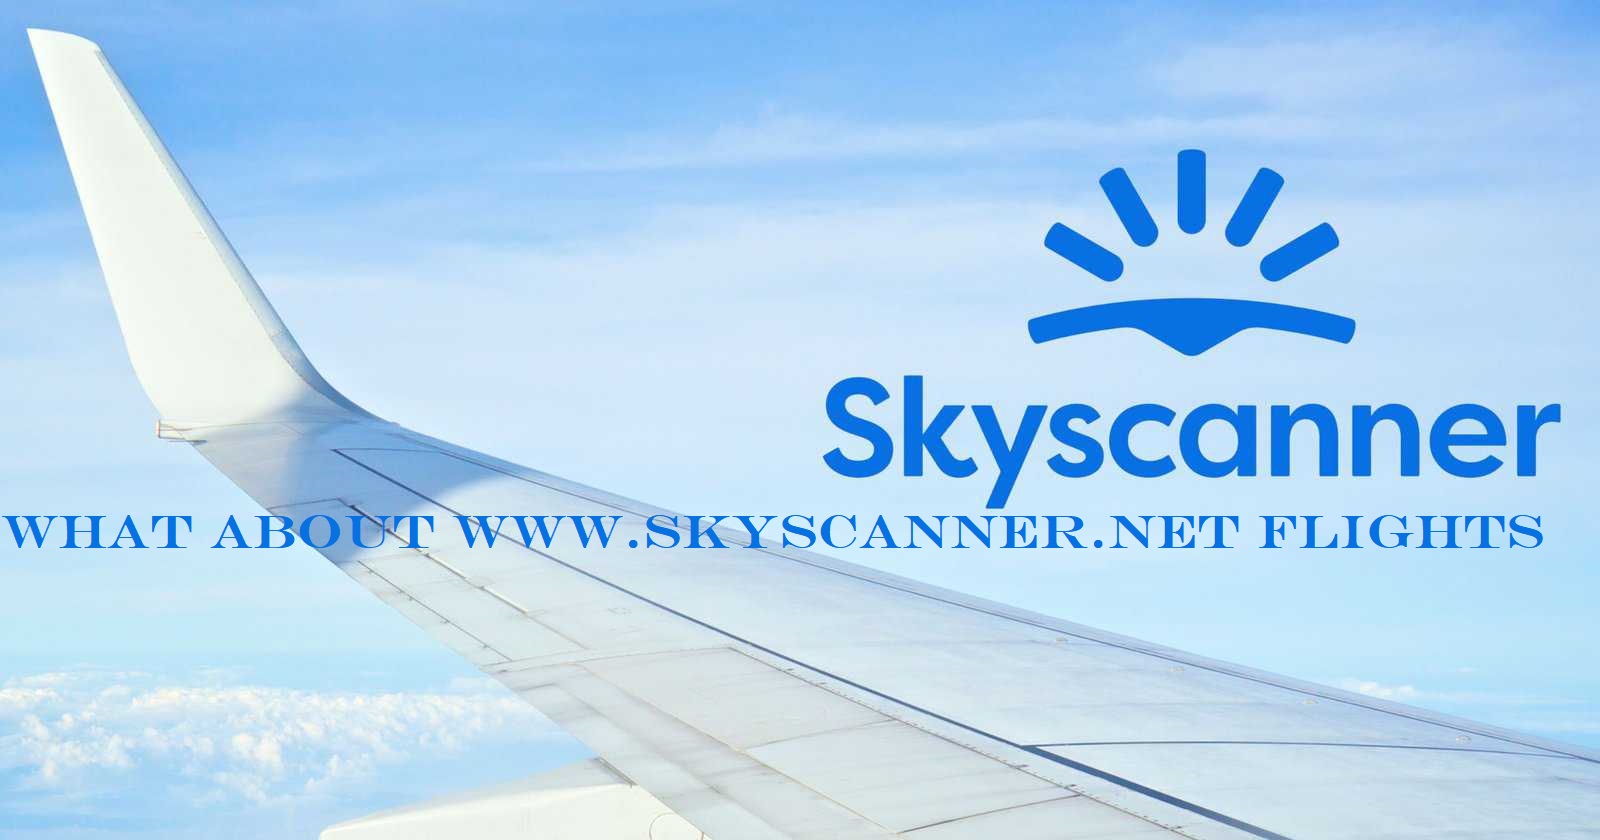 What about www.skyscanner.net Flights